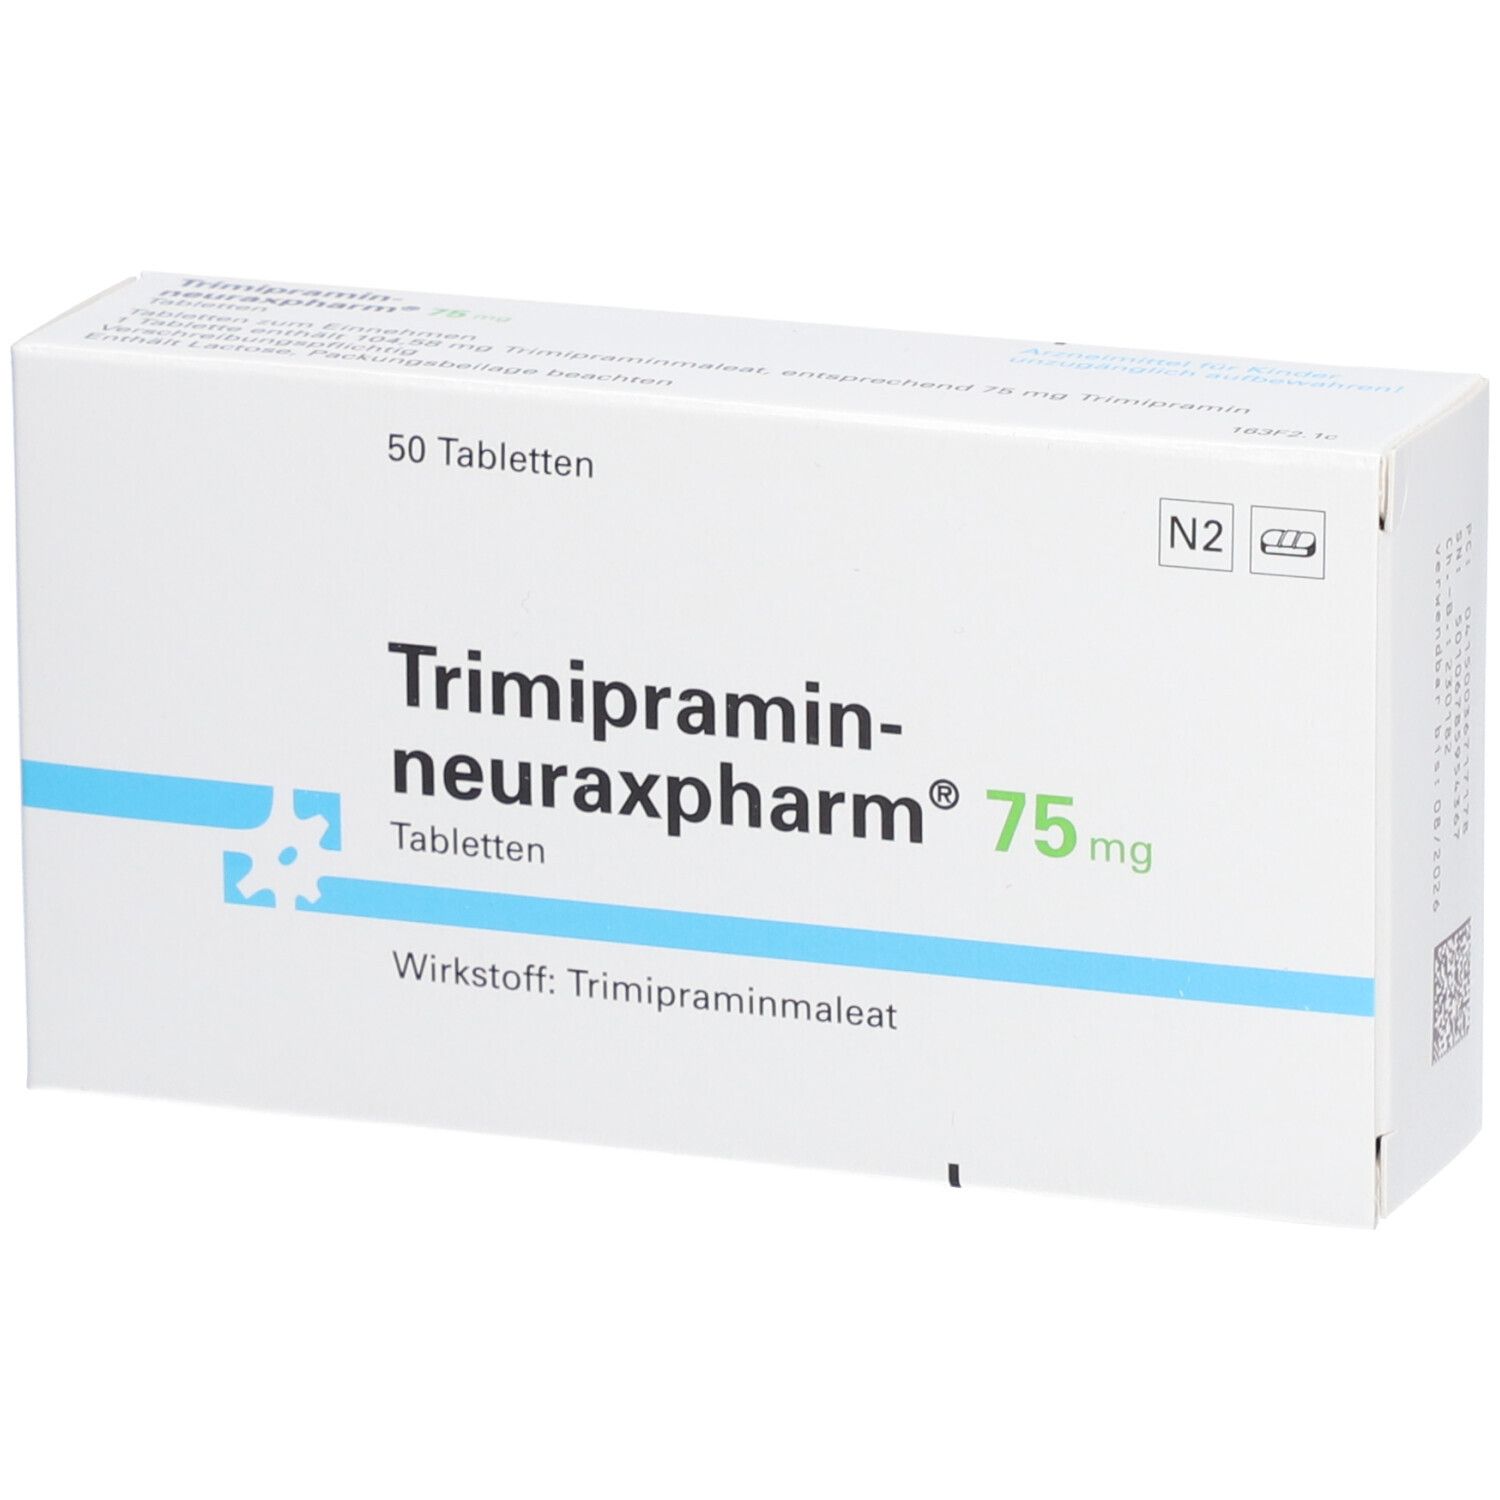 Trimipramin-neuraxpharm® 75 mg